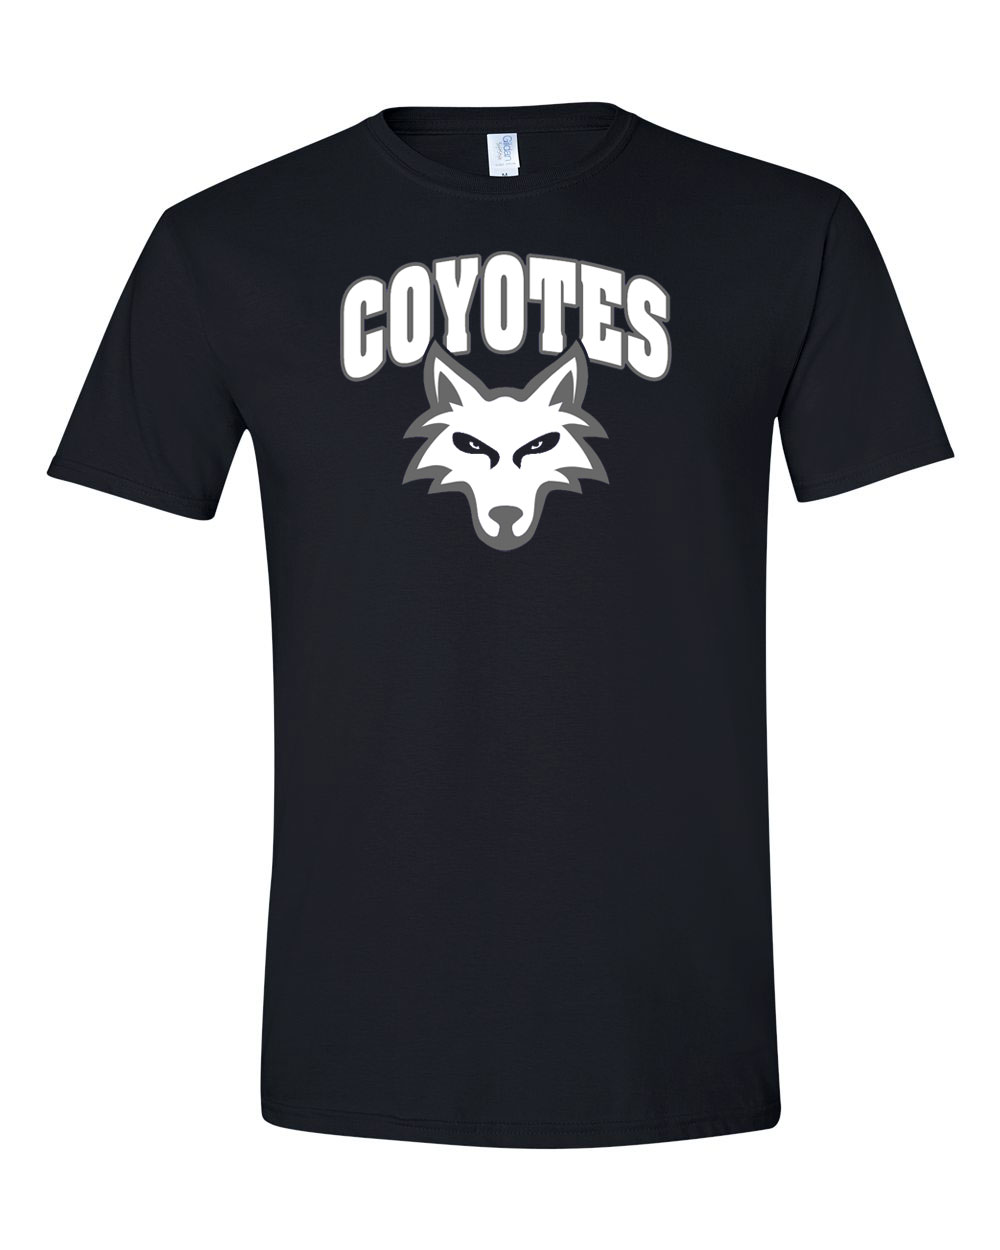 Paris Coyotes | Salt River Shirt Company